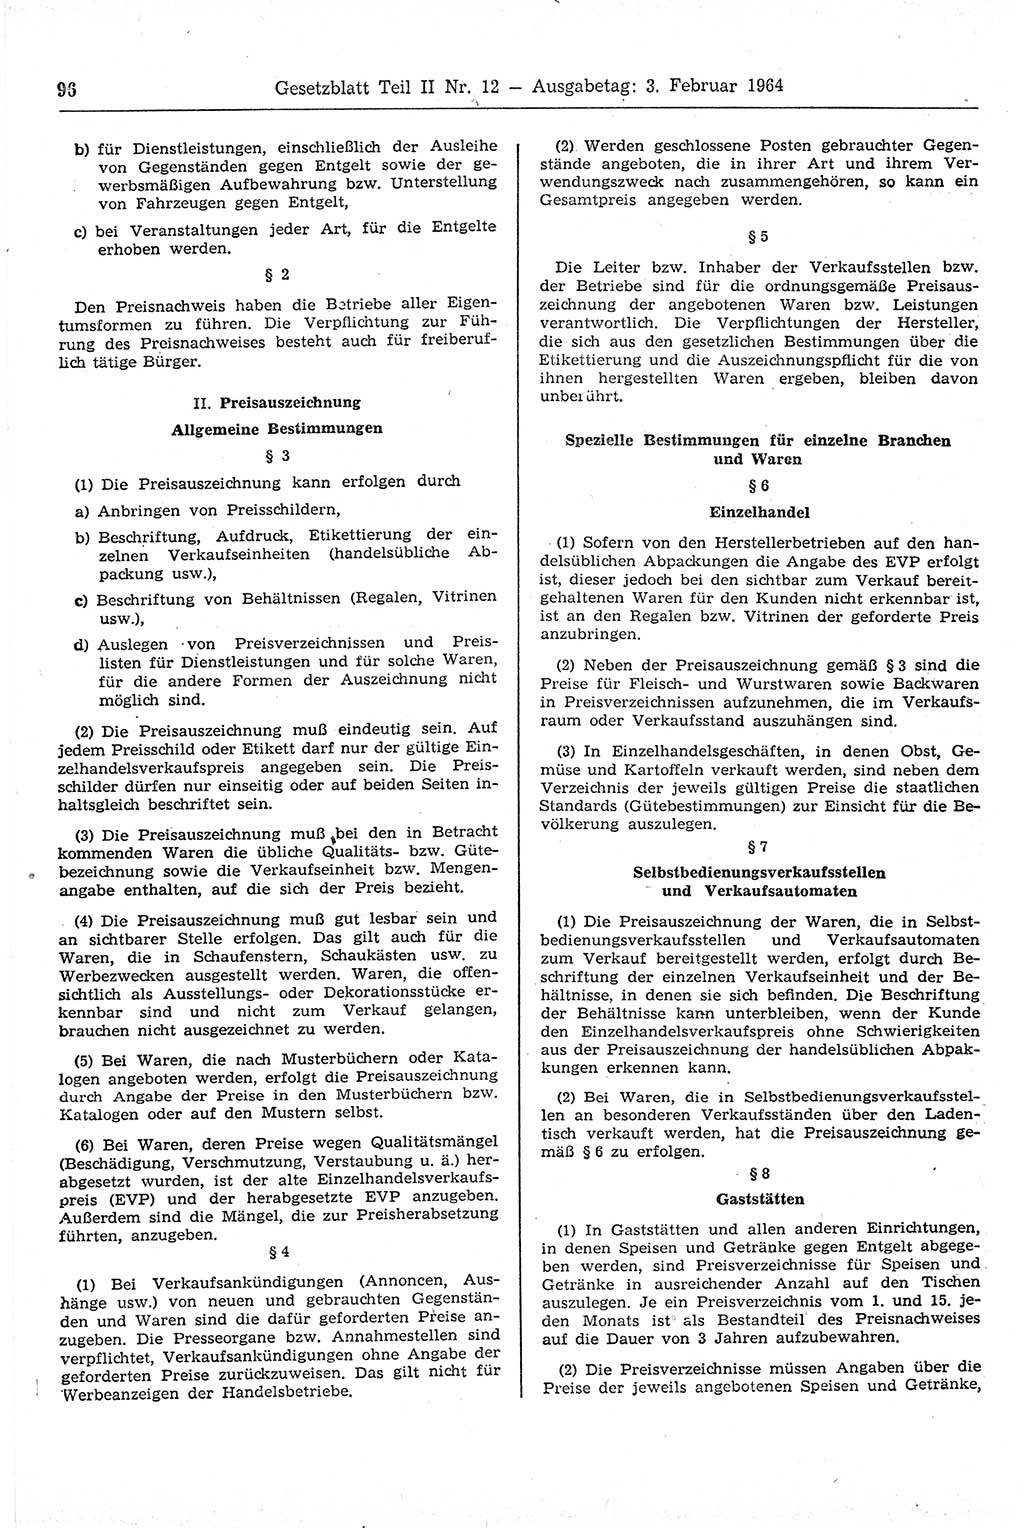 Gesetzblatt (GBl.) der Deutschen Demokratischen Republik (DDR) Teil ⅠⅠ 1964, Seite 96 (GBl. DDR ⅠⅠ 1964, S. 96)